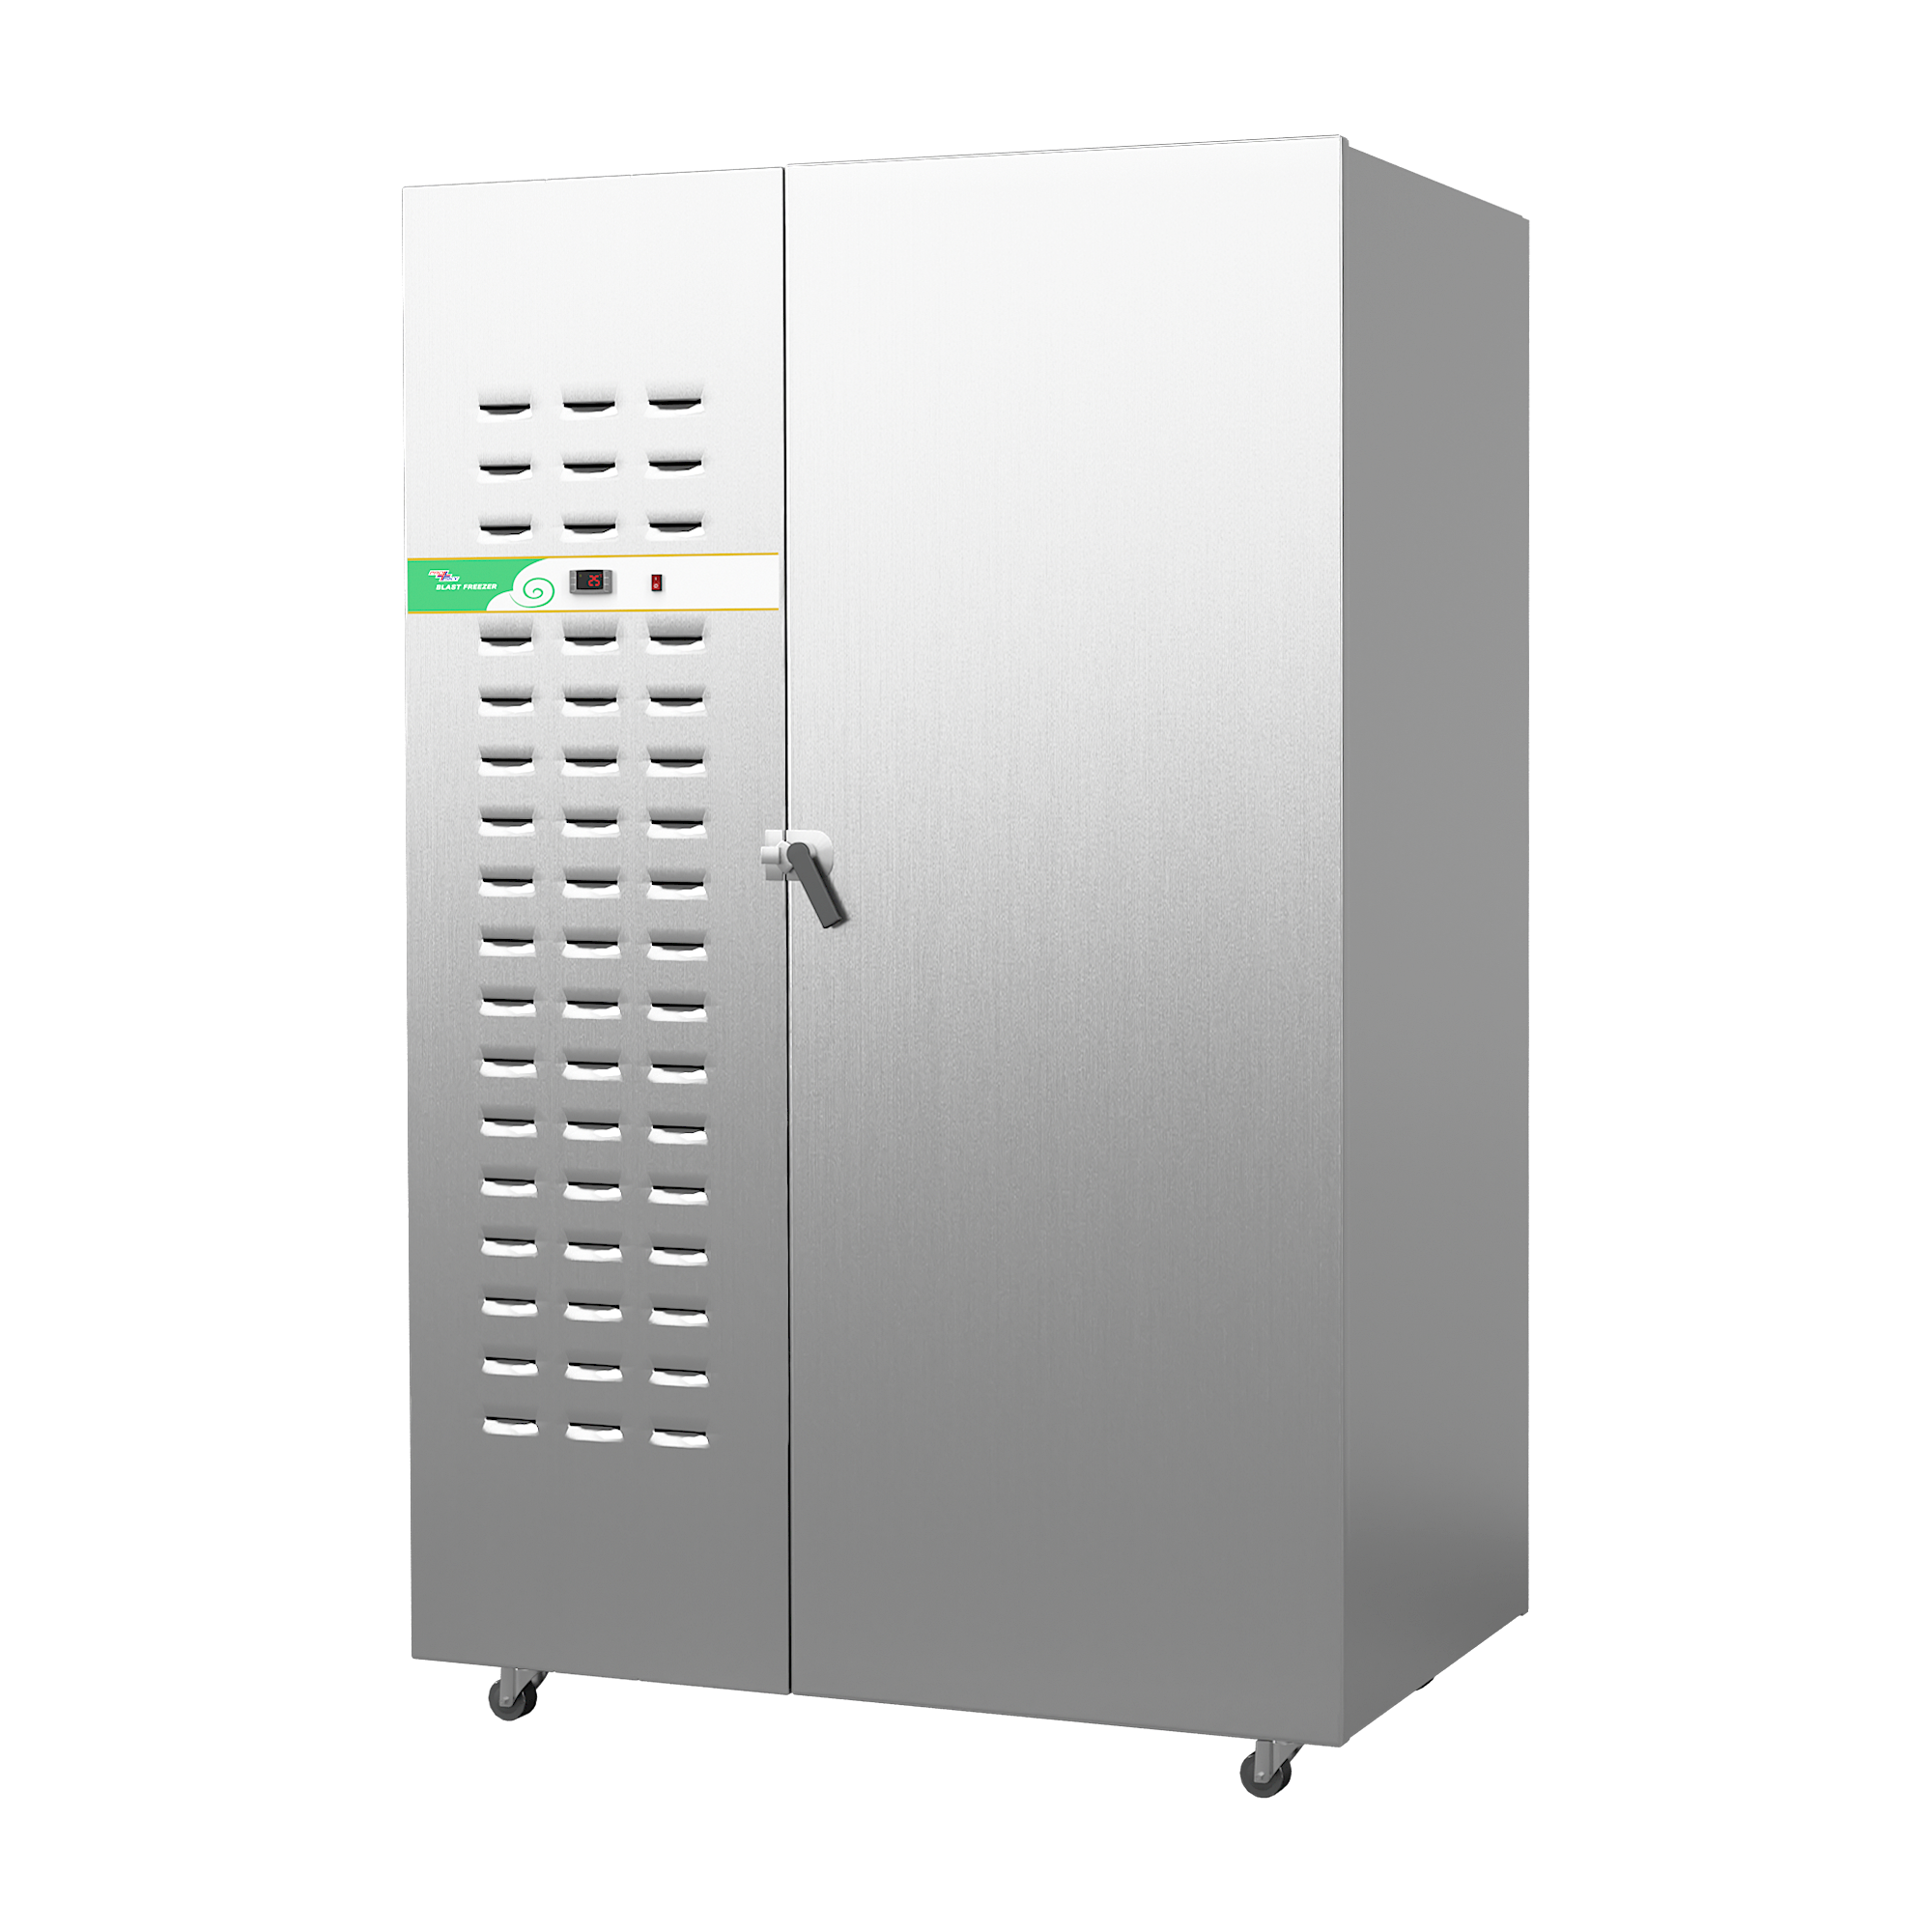 Prosky Saga 830L商业工业直立食品爆炸冷却器冷冻机与冰箱